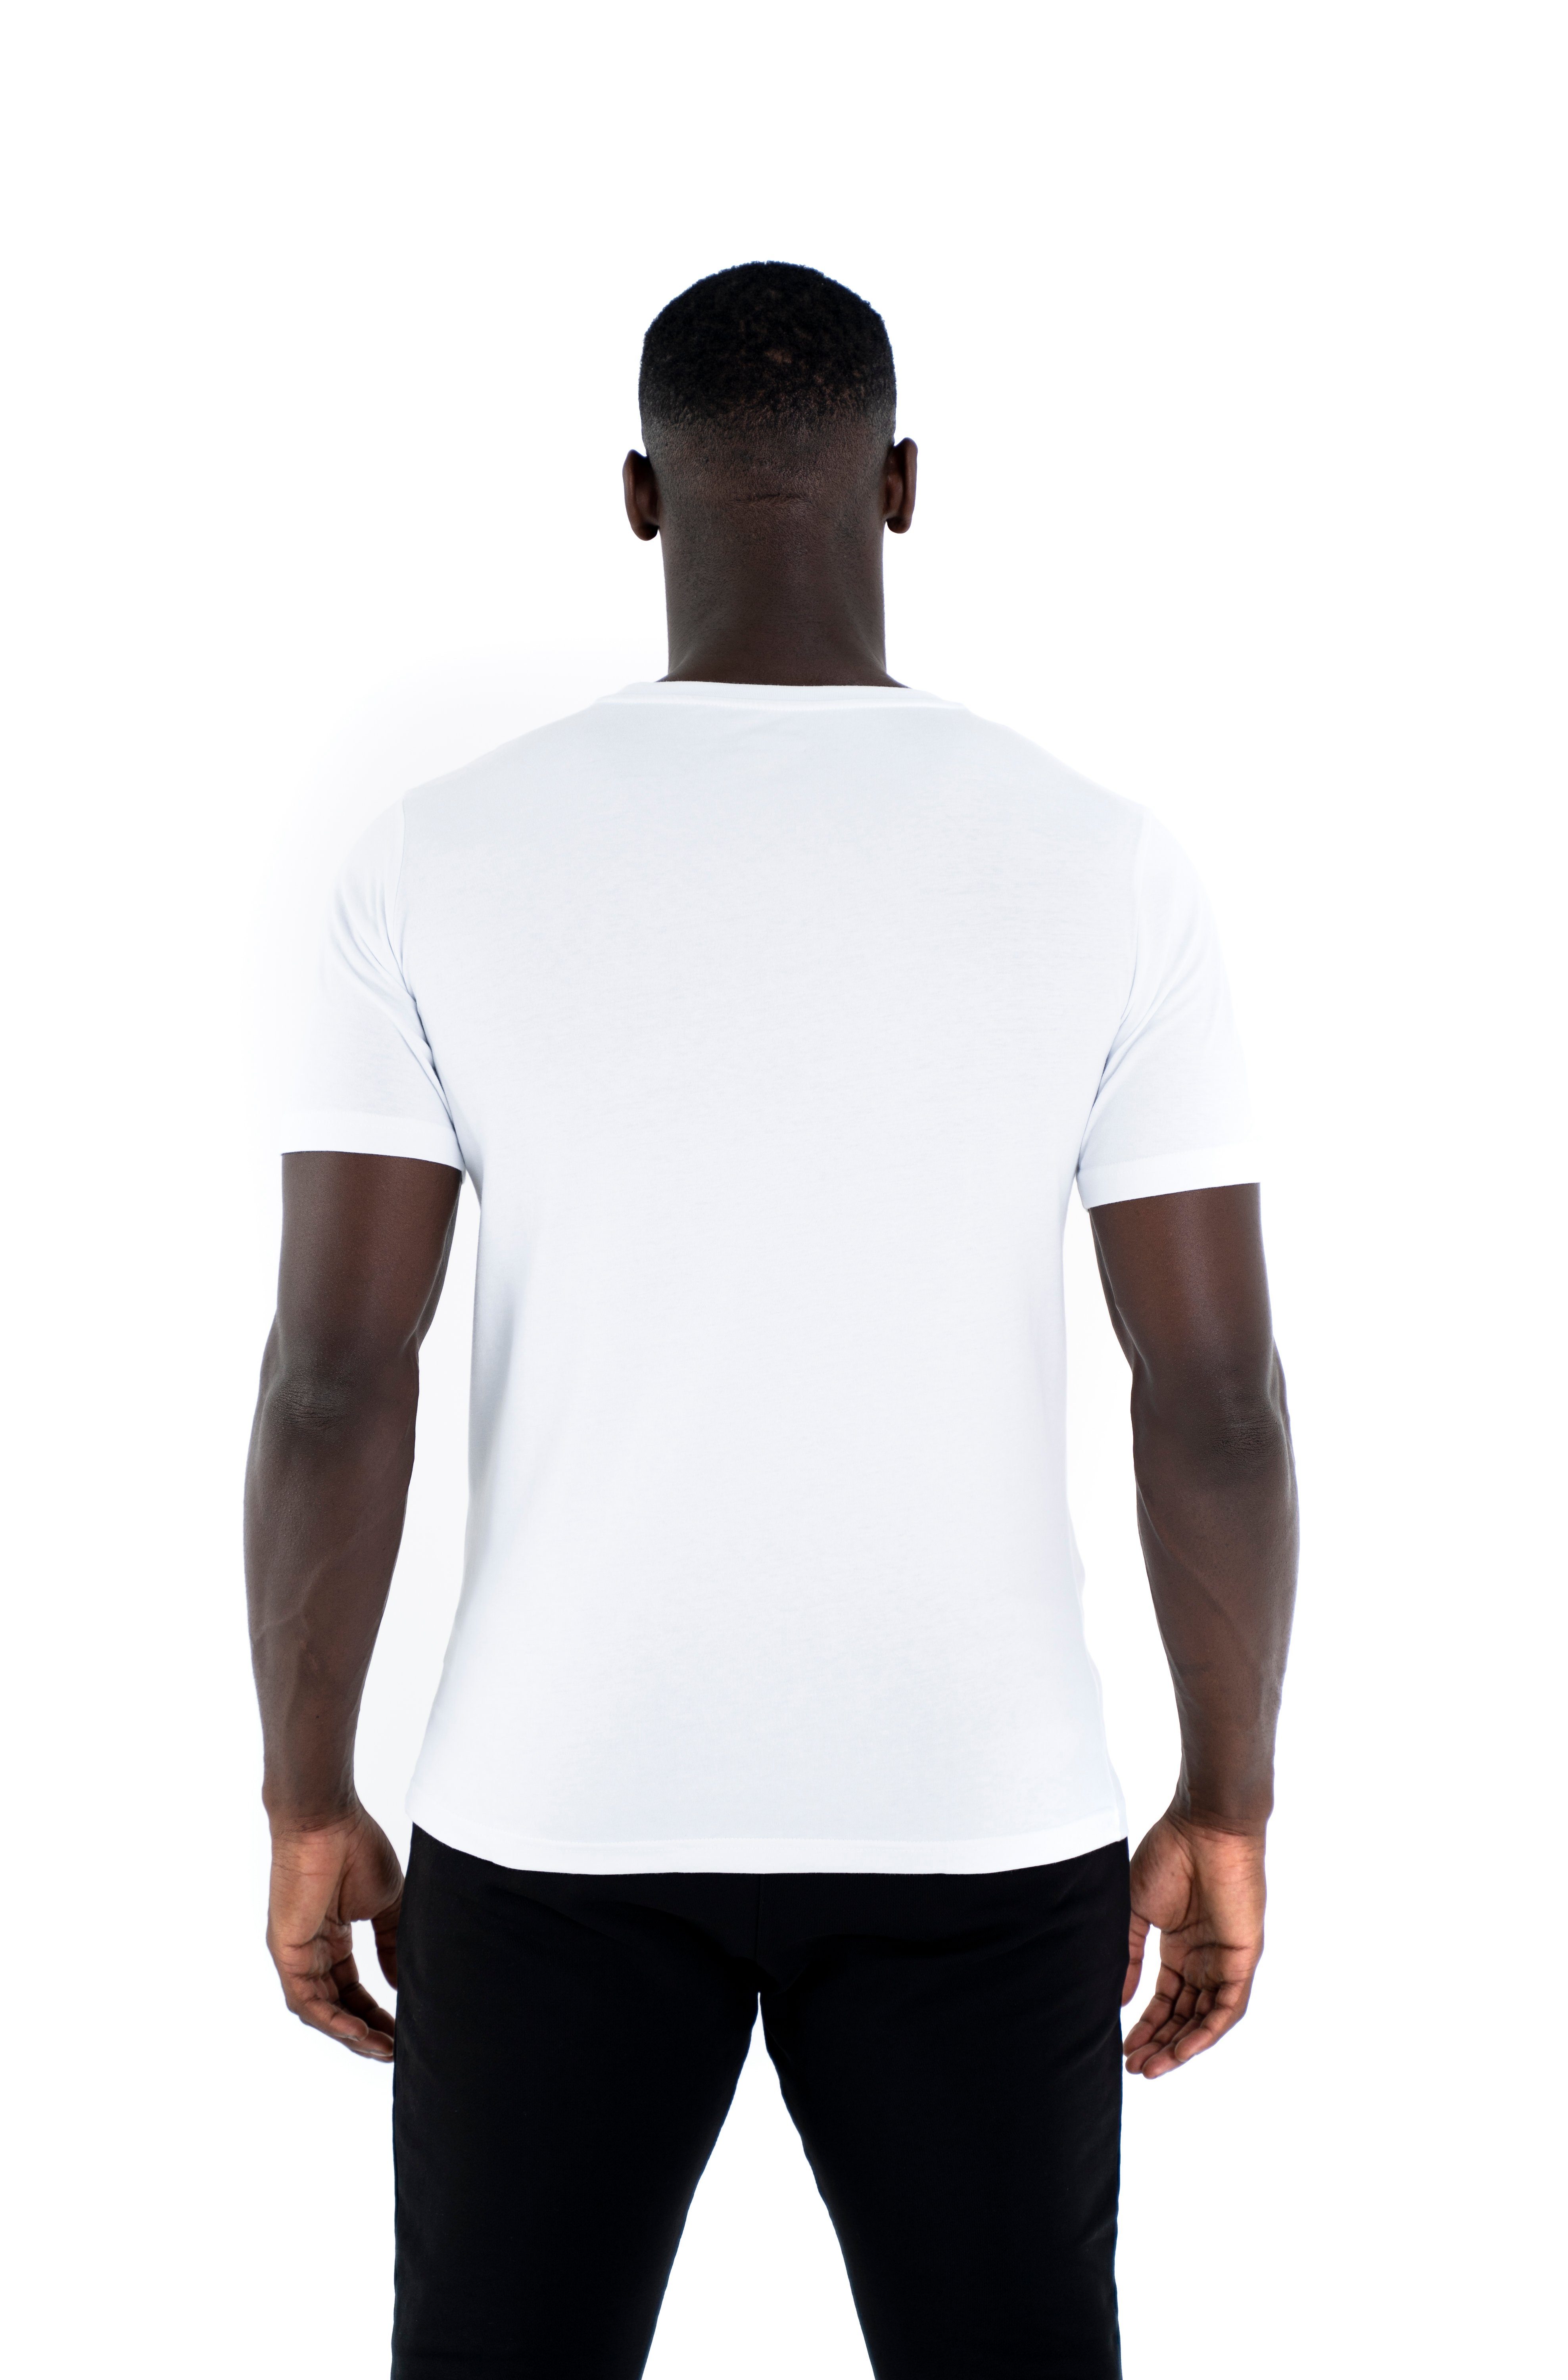 Cotton C-Neck Sportwear 100% Shirt Baumwoll Rundhalsausschnitt, weiß Universum Modern T-Shirt